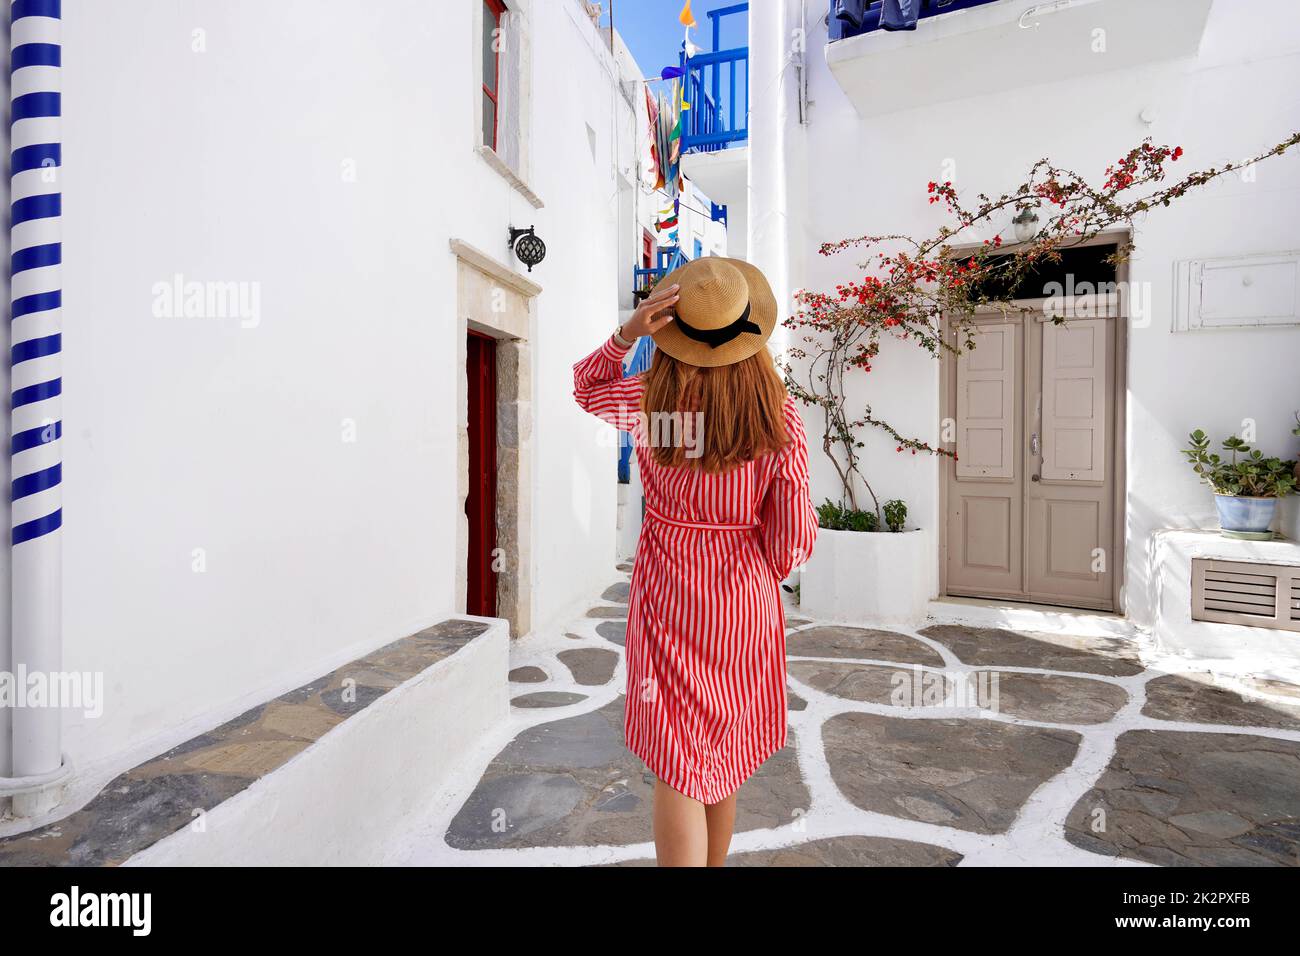 Une femme de tourisme marche dans les ruelles de la ville pittoresque de Mykonos en Grèce Banque D'Images